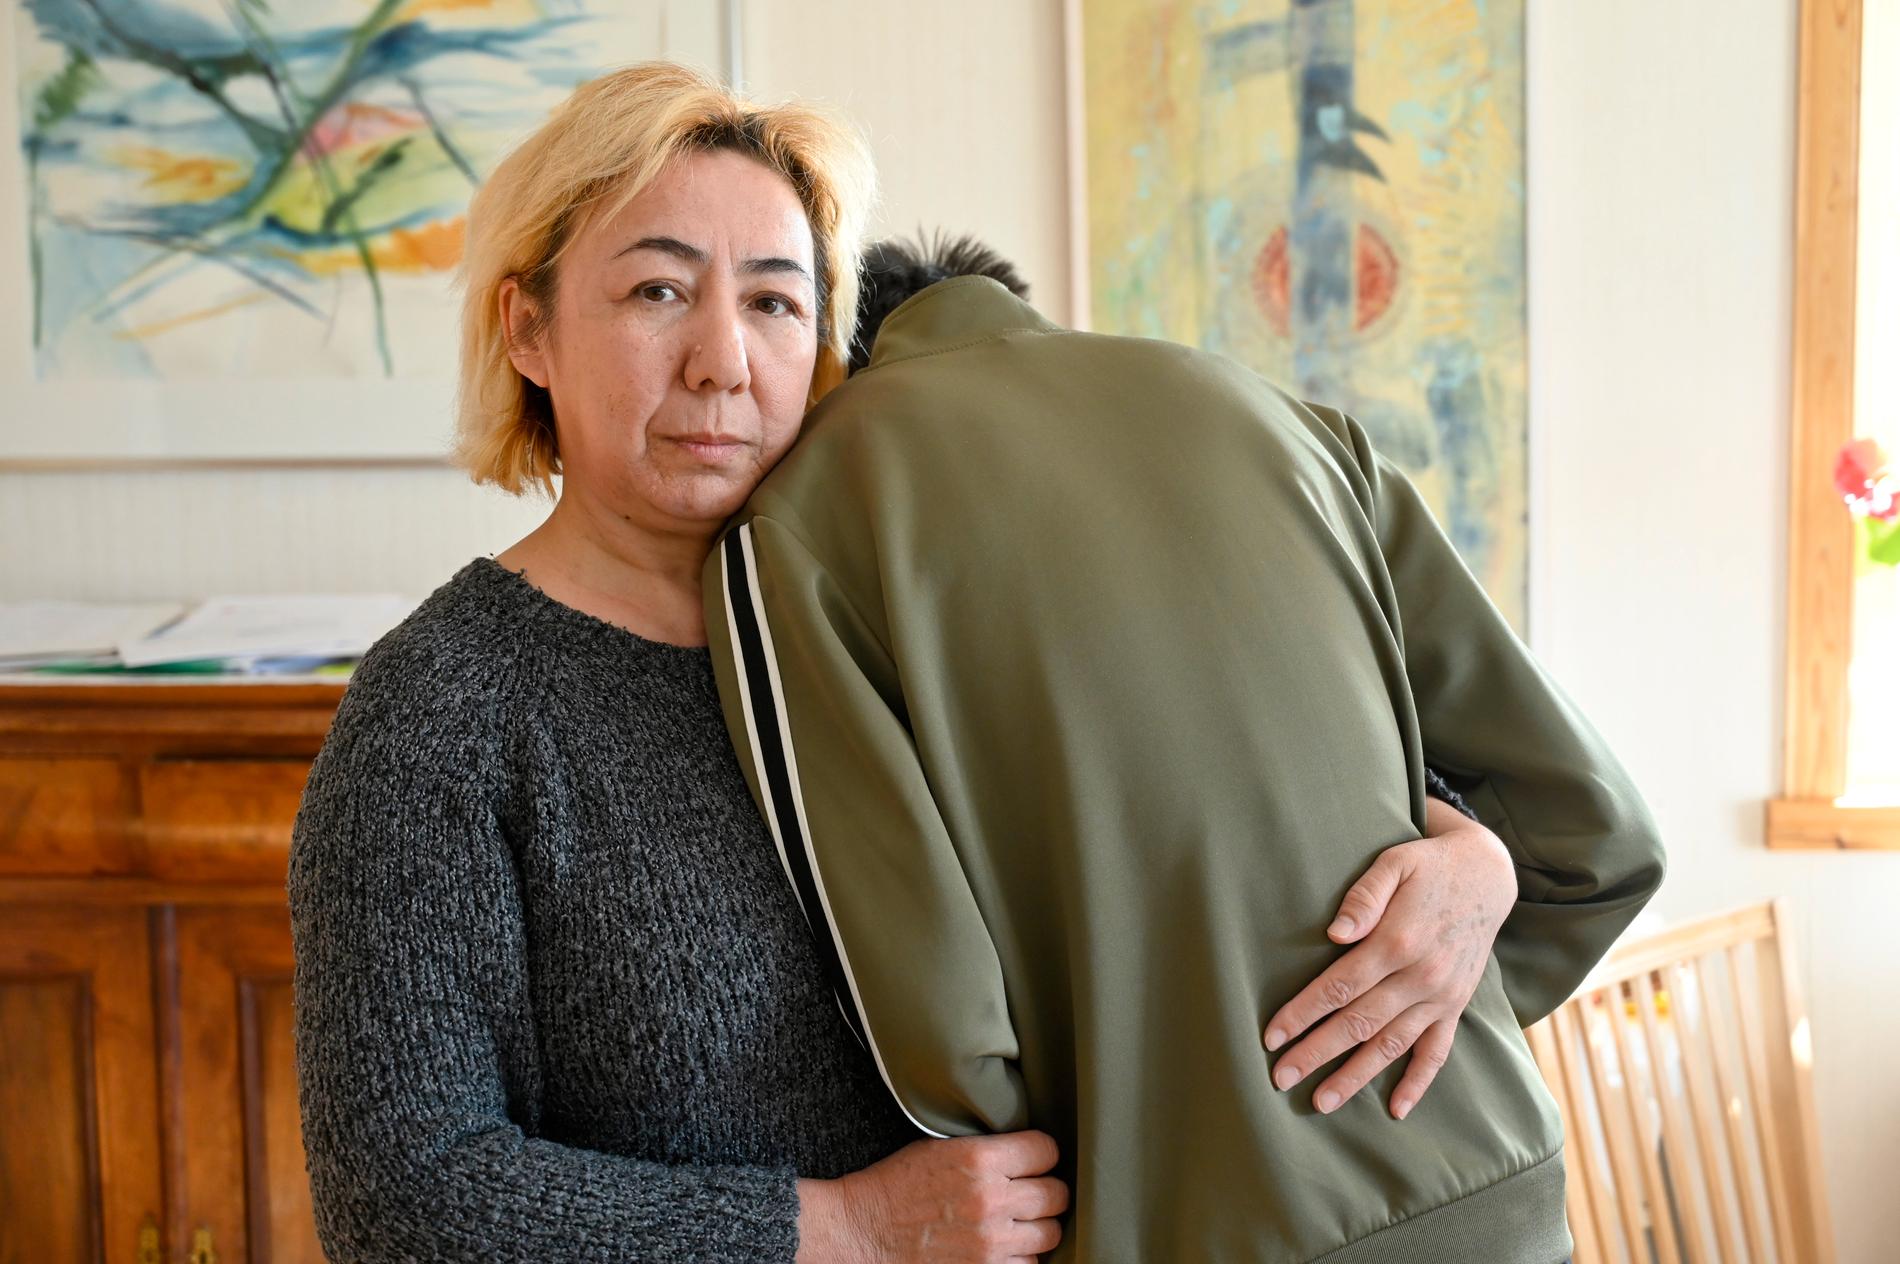 Mira och hennnes 15-årige son som har en lätt utvecklingsstörning, ska utvisas till Kazakstan. 